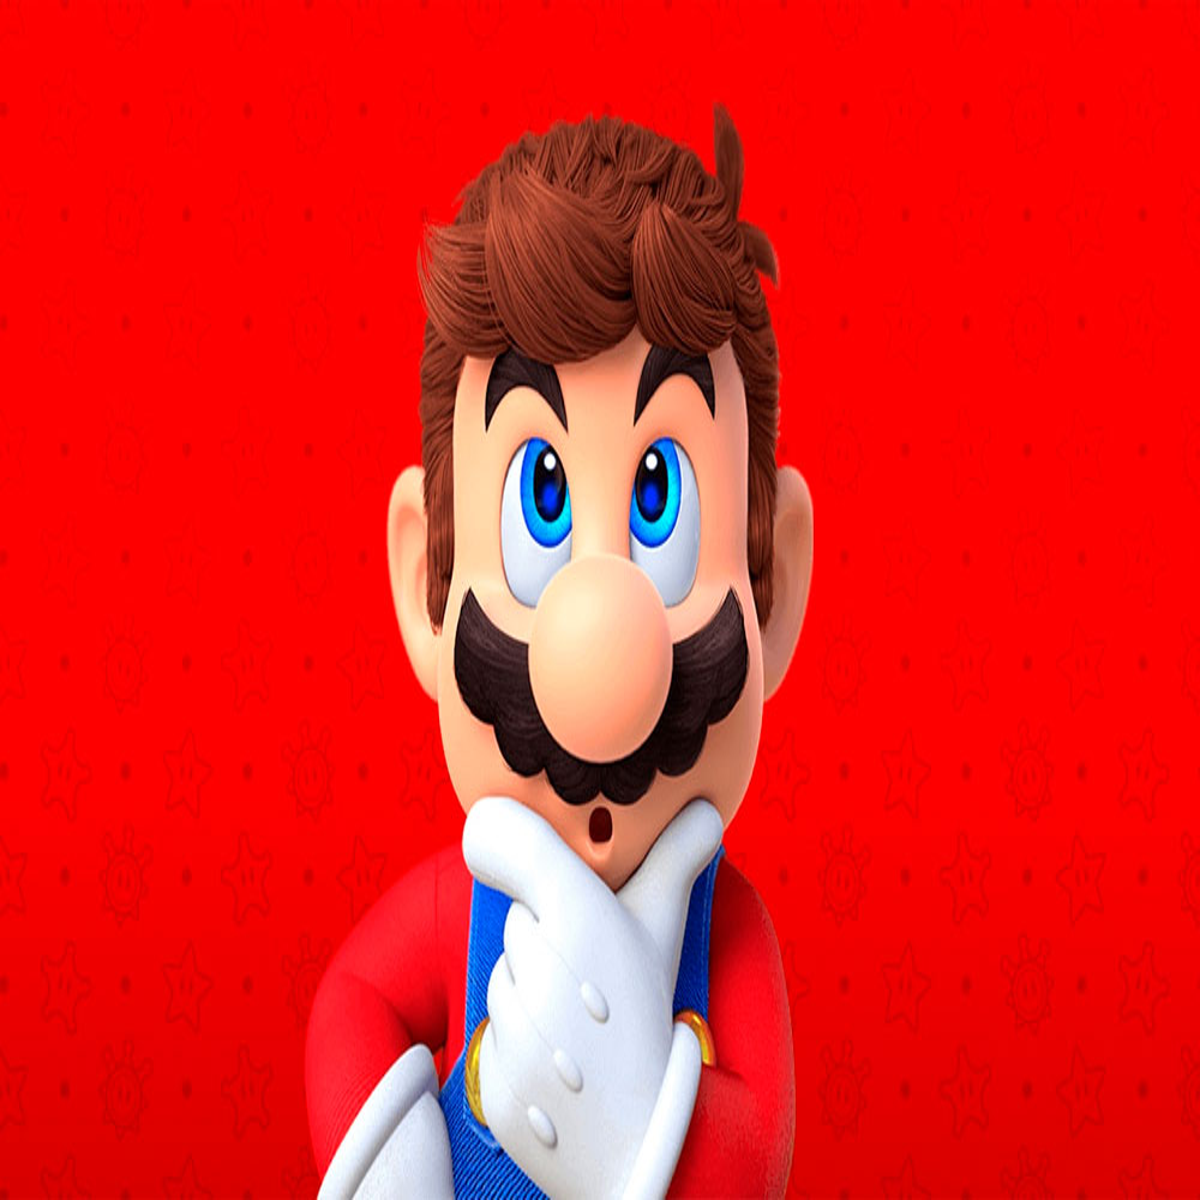 Nintendo anuncia o Mar10 Day com descontos em jogos do Mario